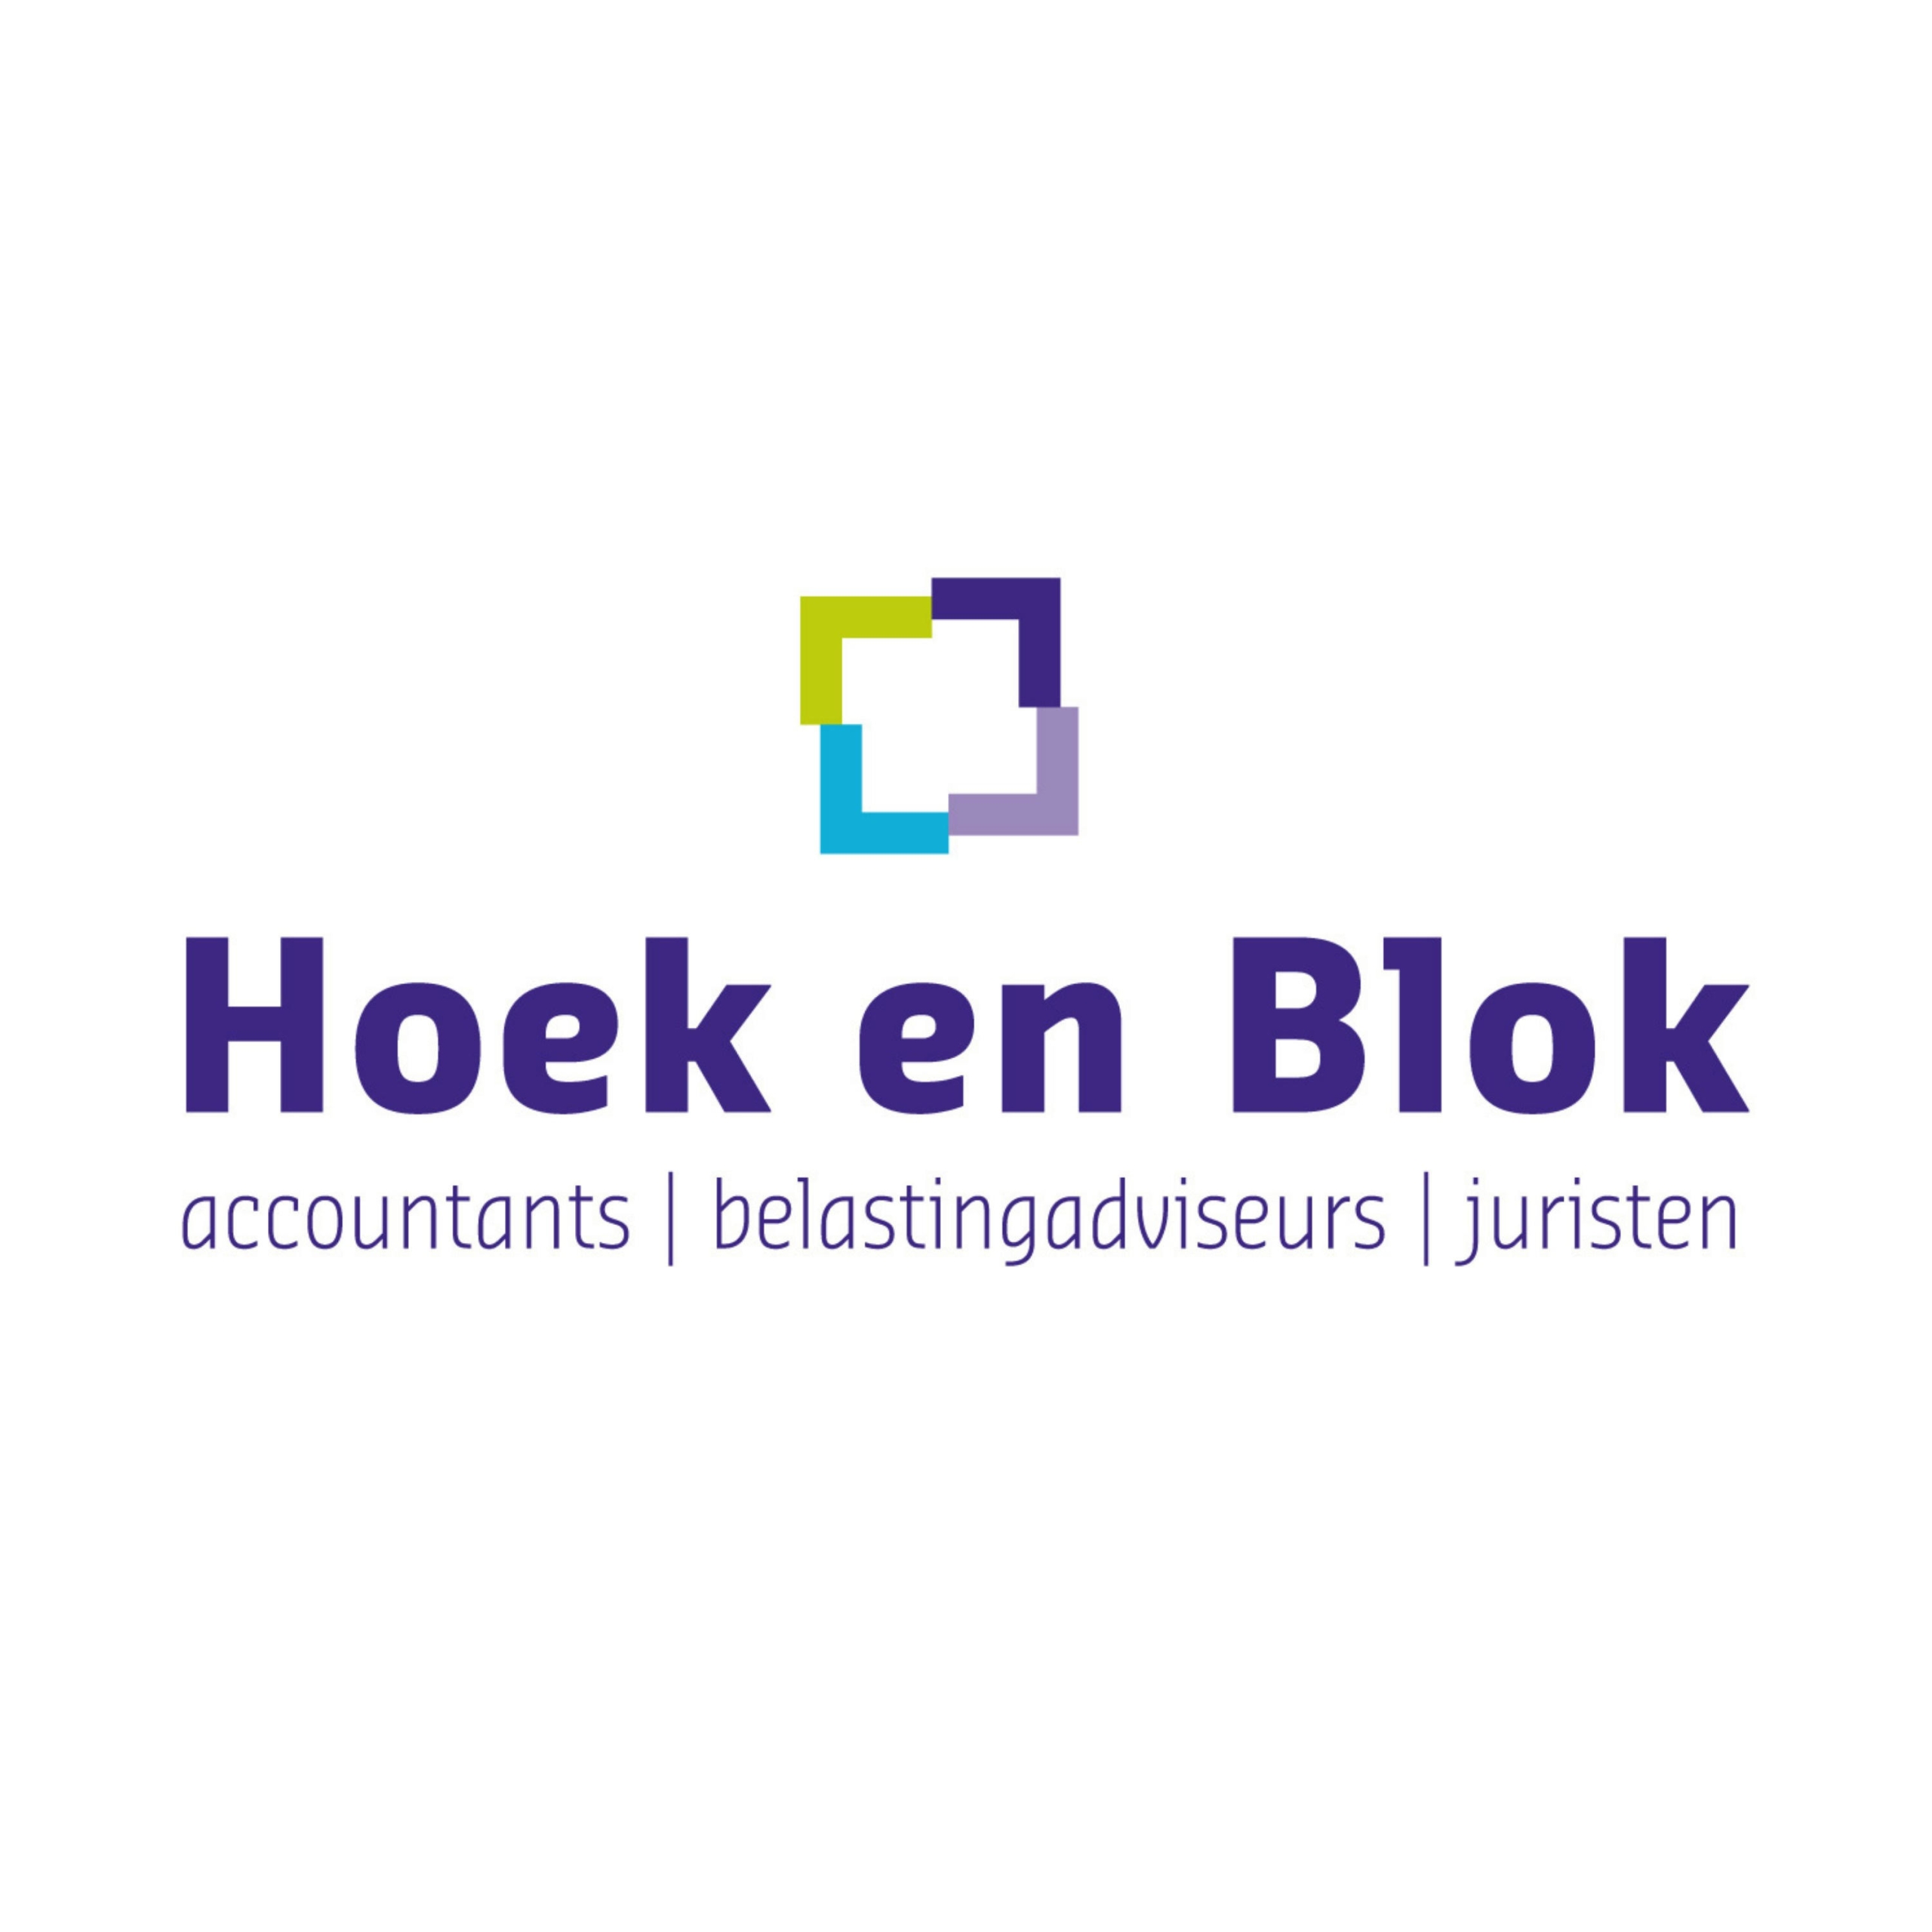 Security awareness training Hoek en Blok